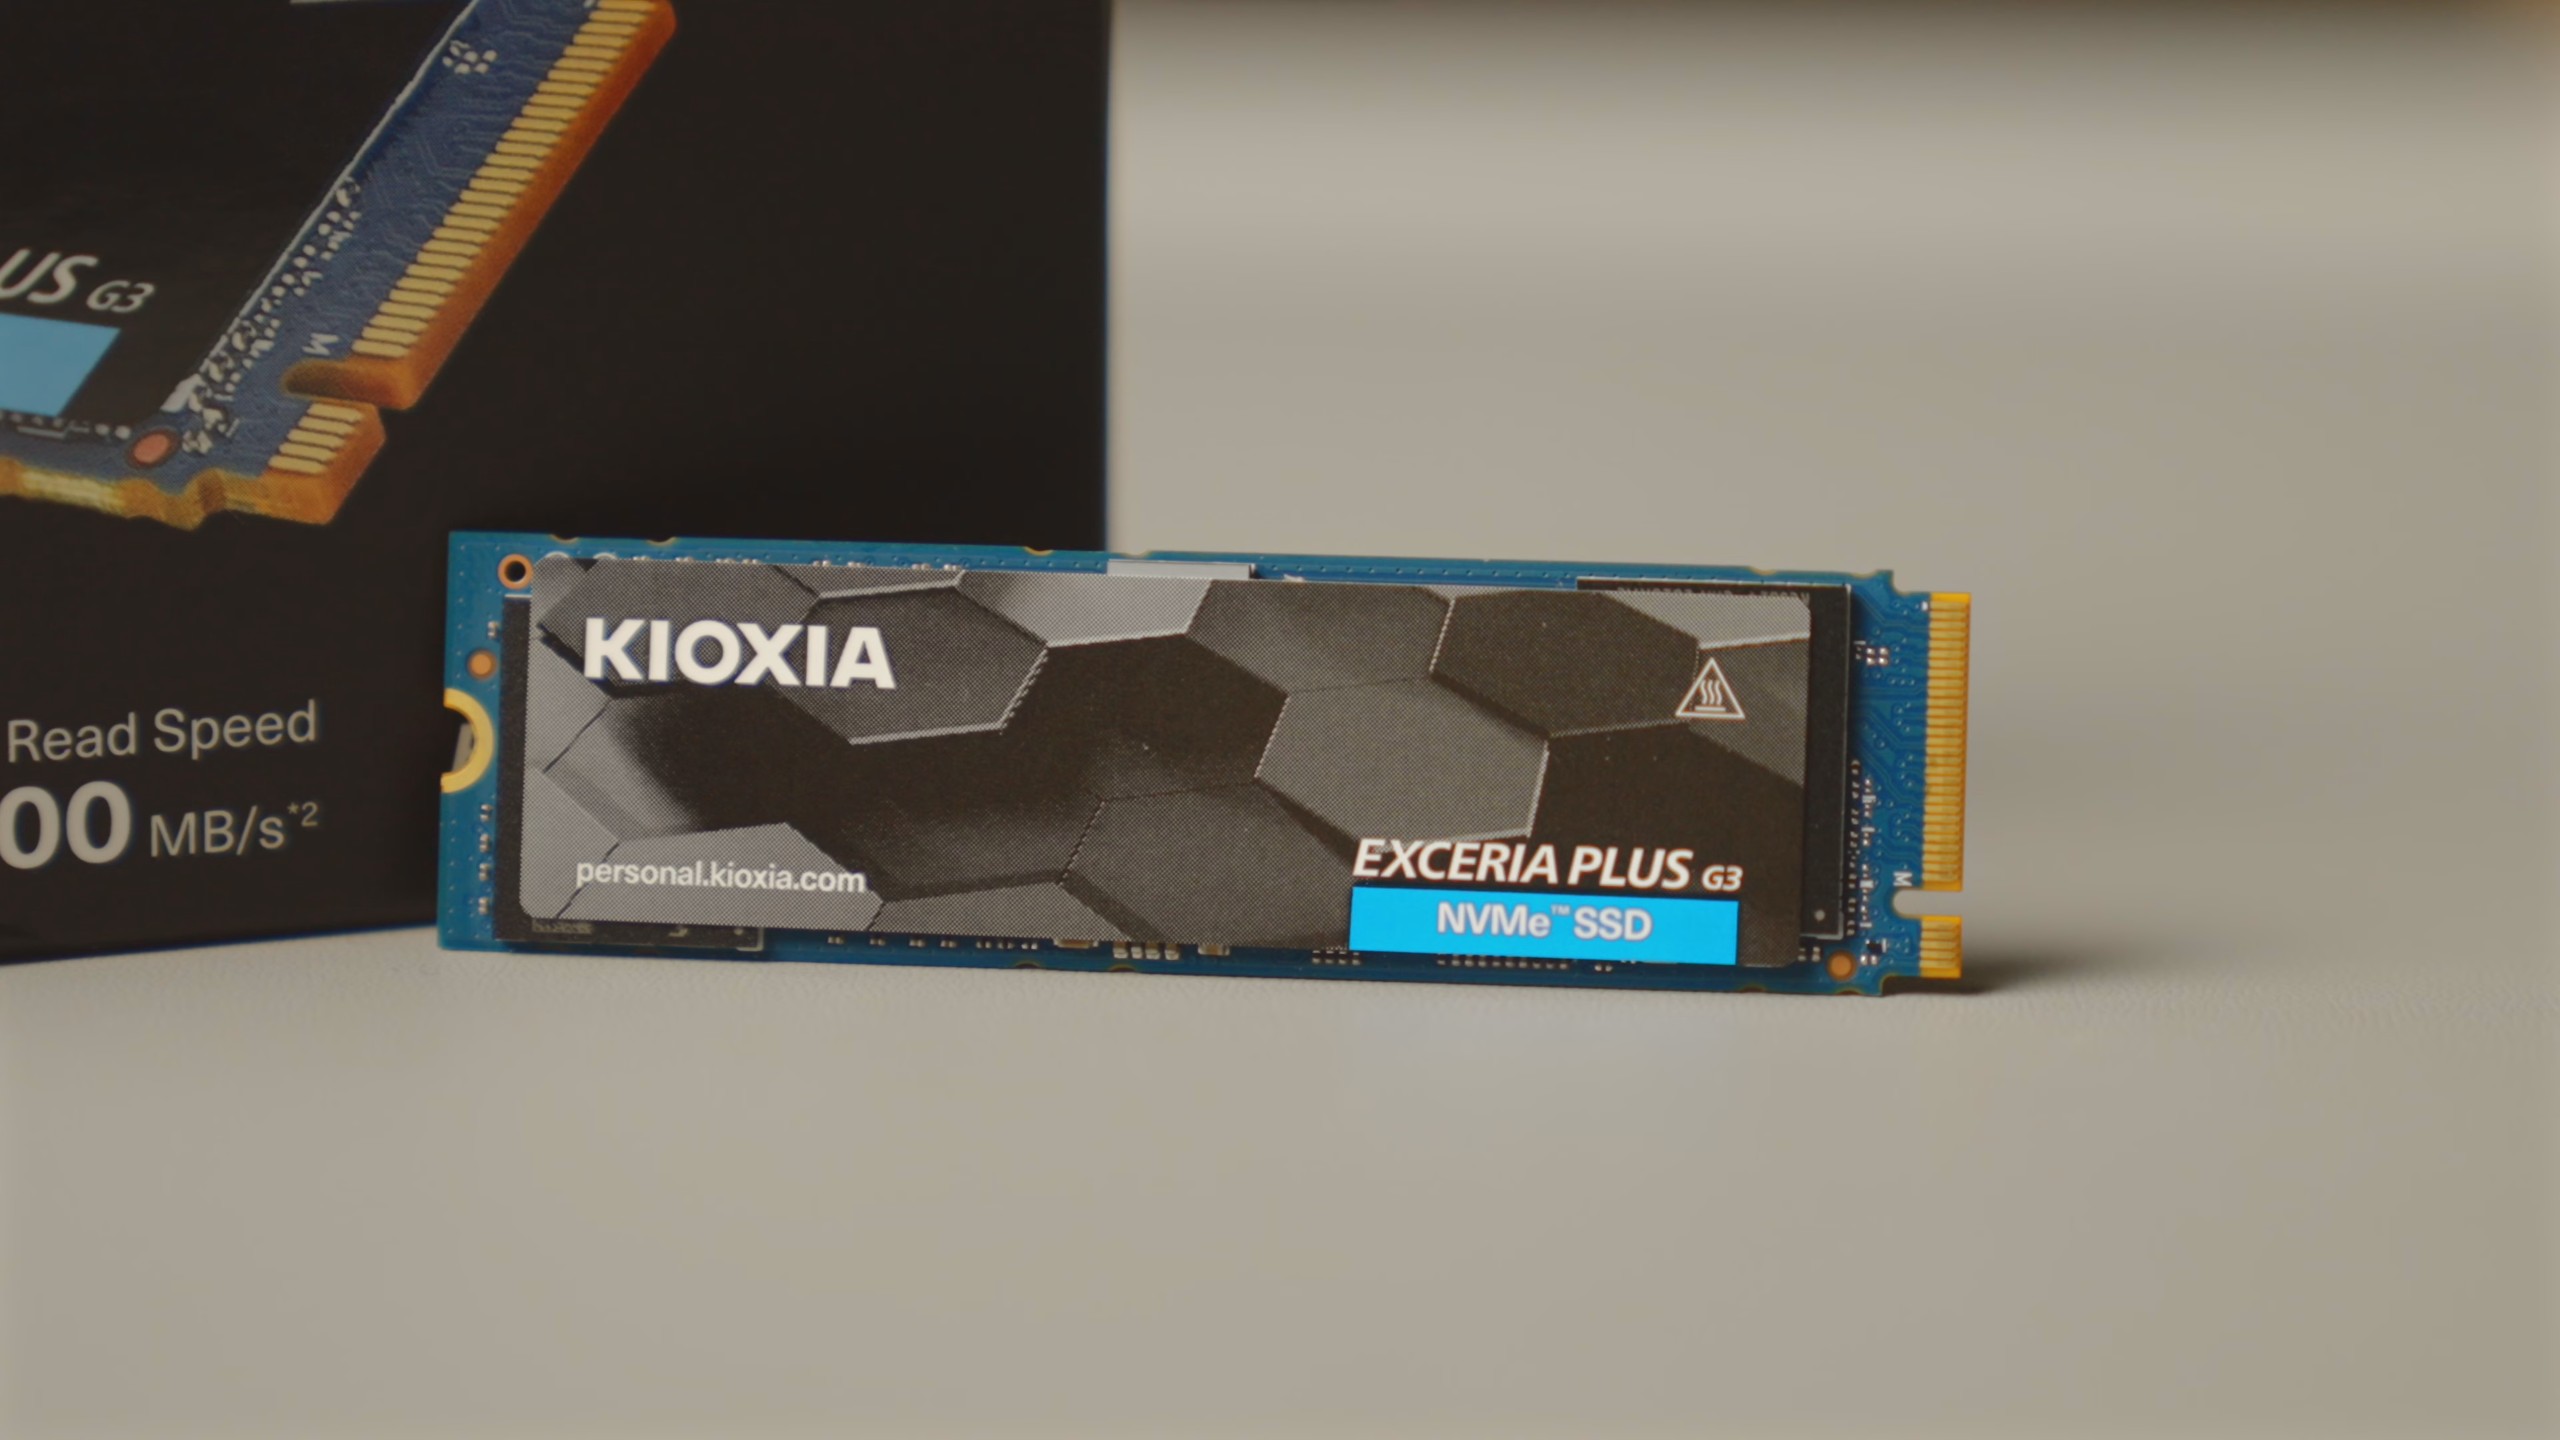 KIOXIA Exceria Plus G3